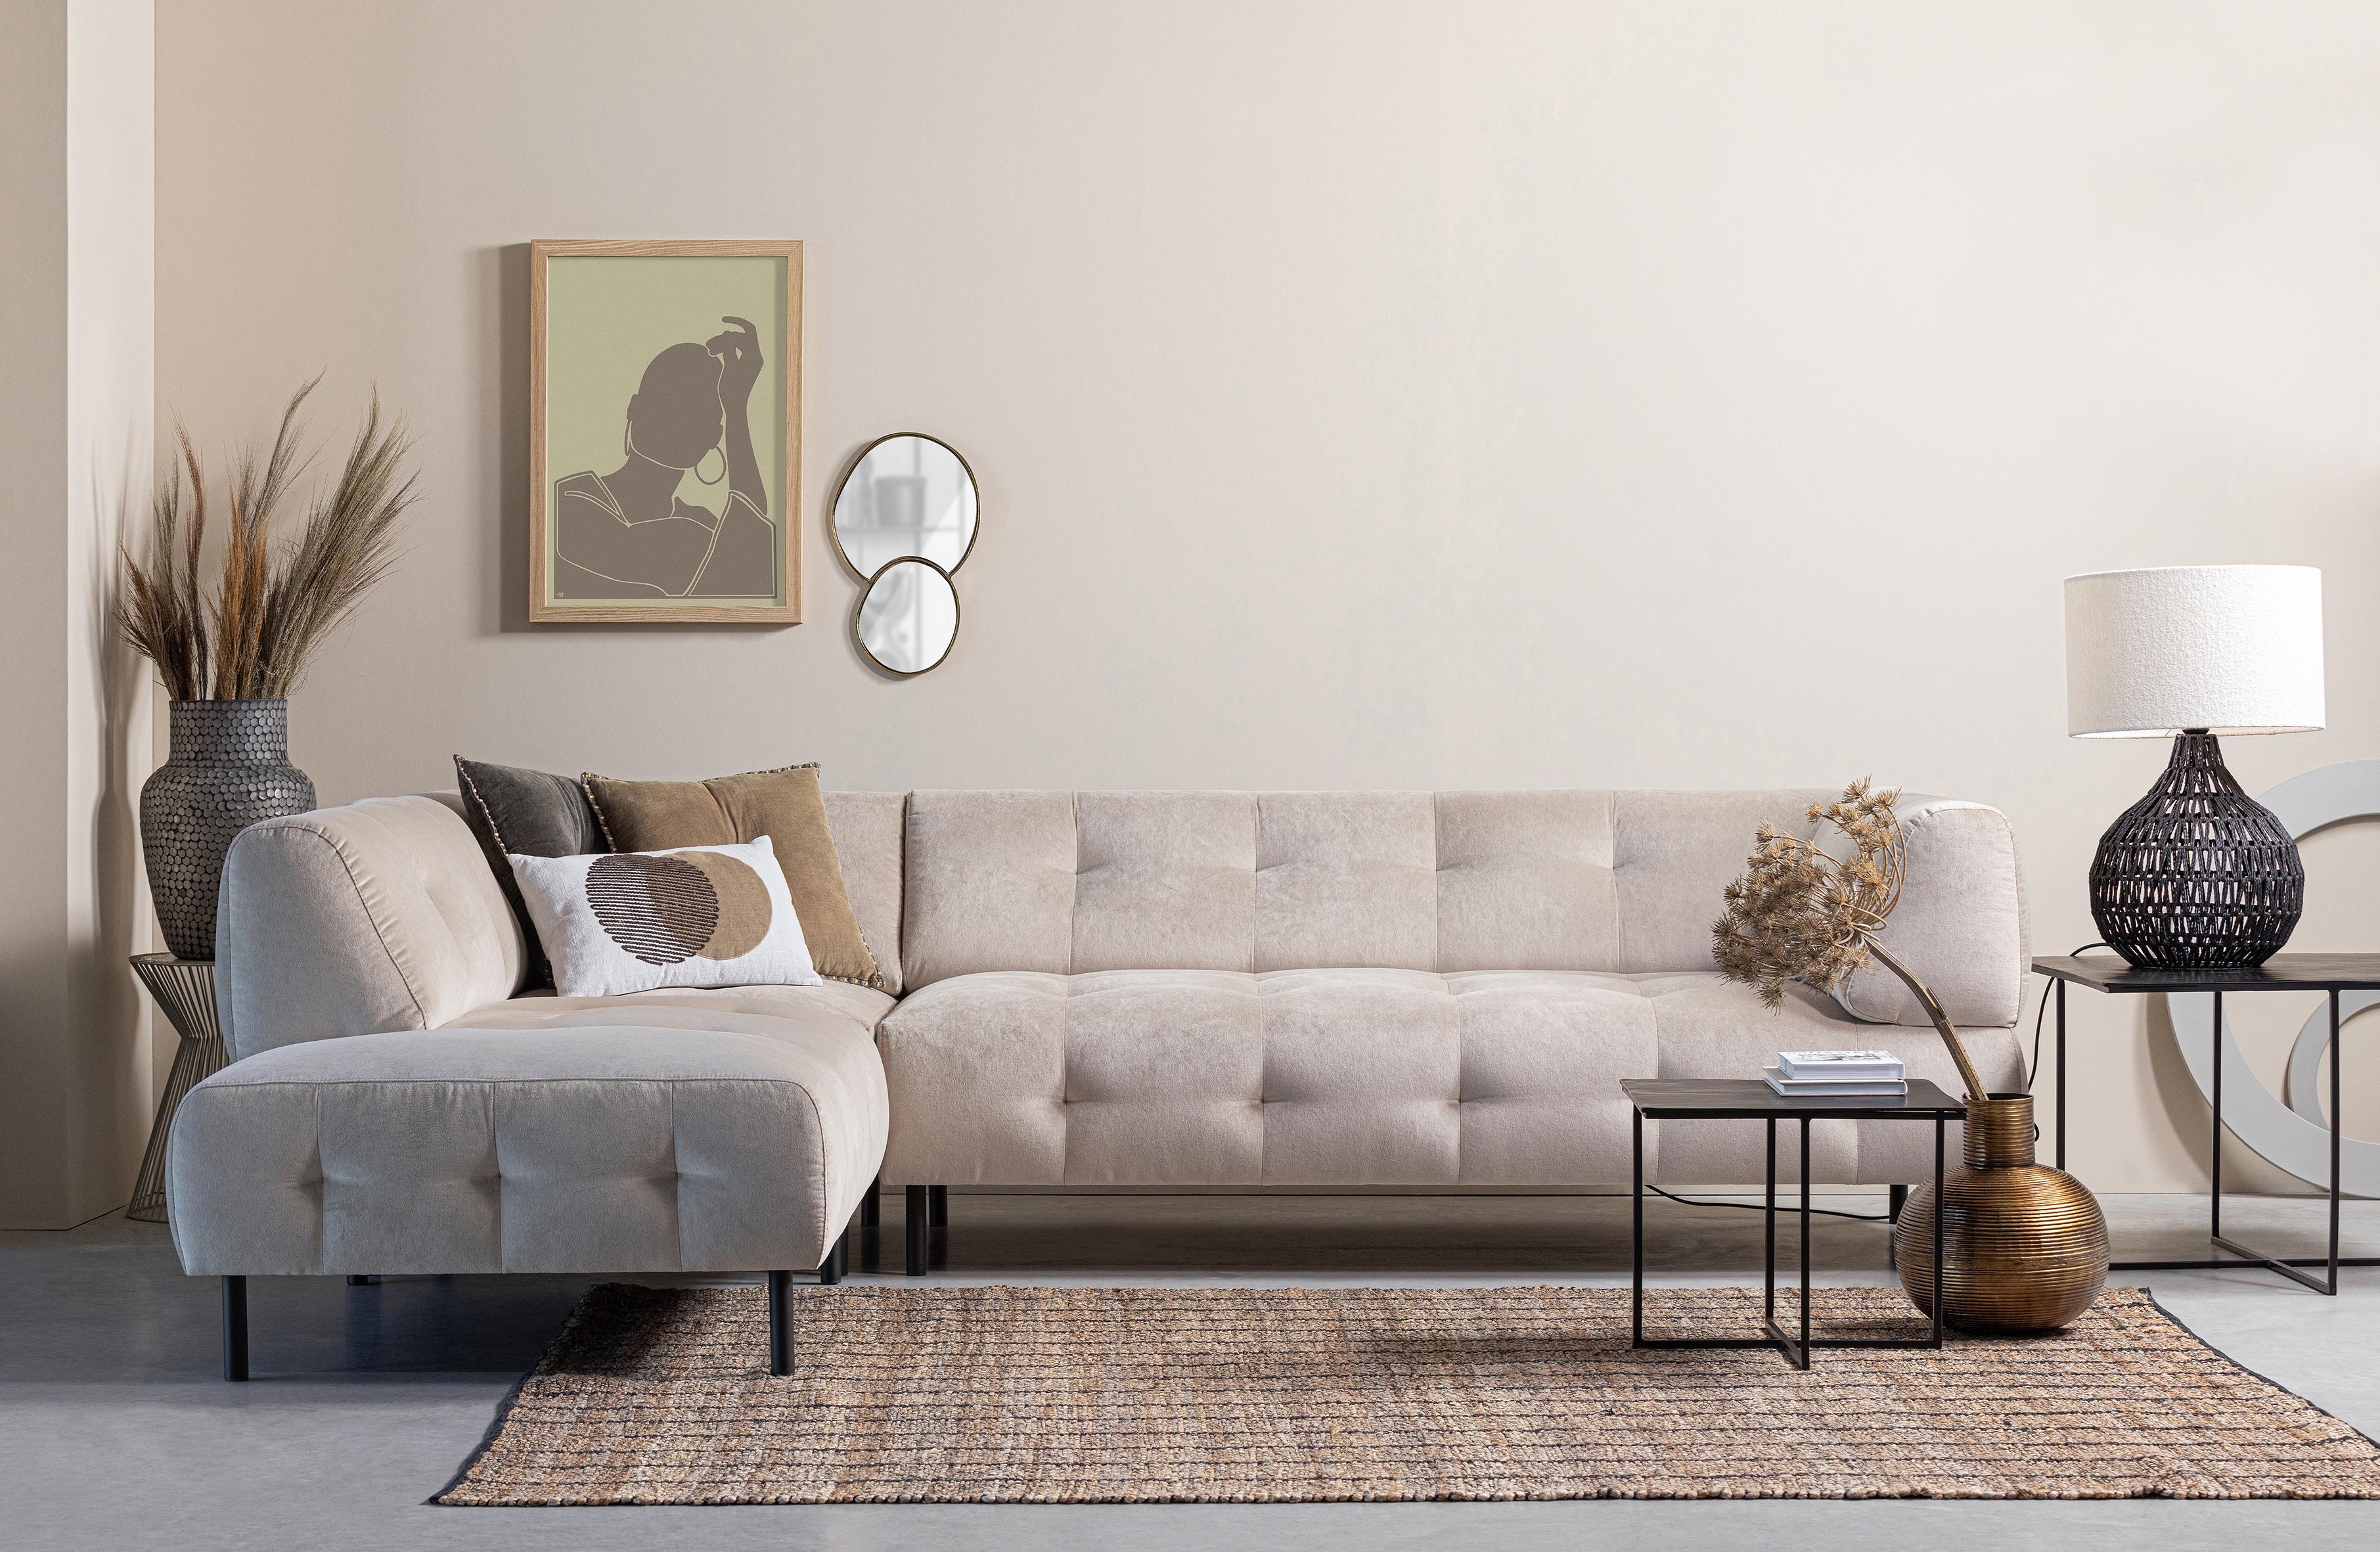 #couchliebt #sofa #wohnzimmer #couch #livingroom #couchstyle

